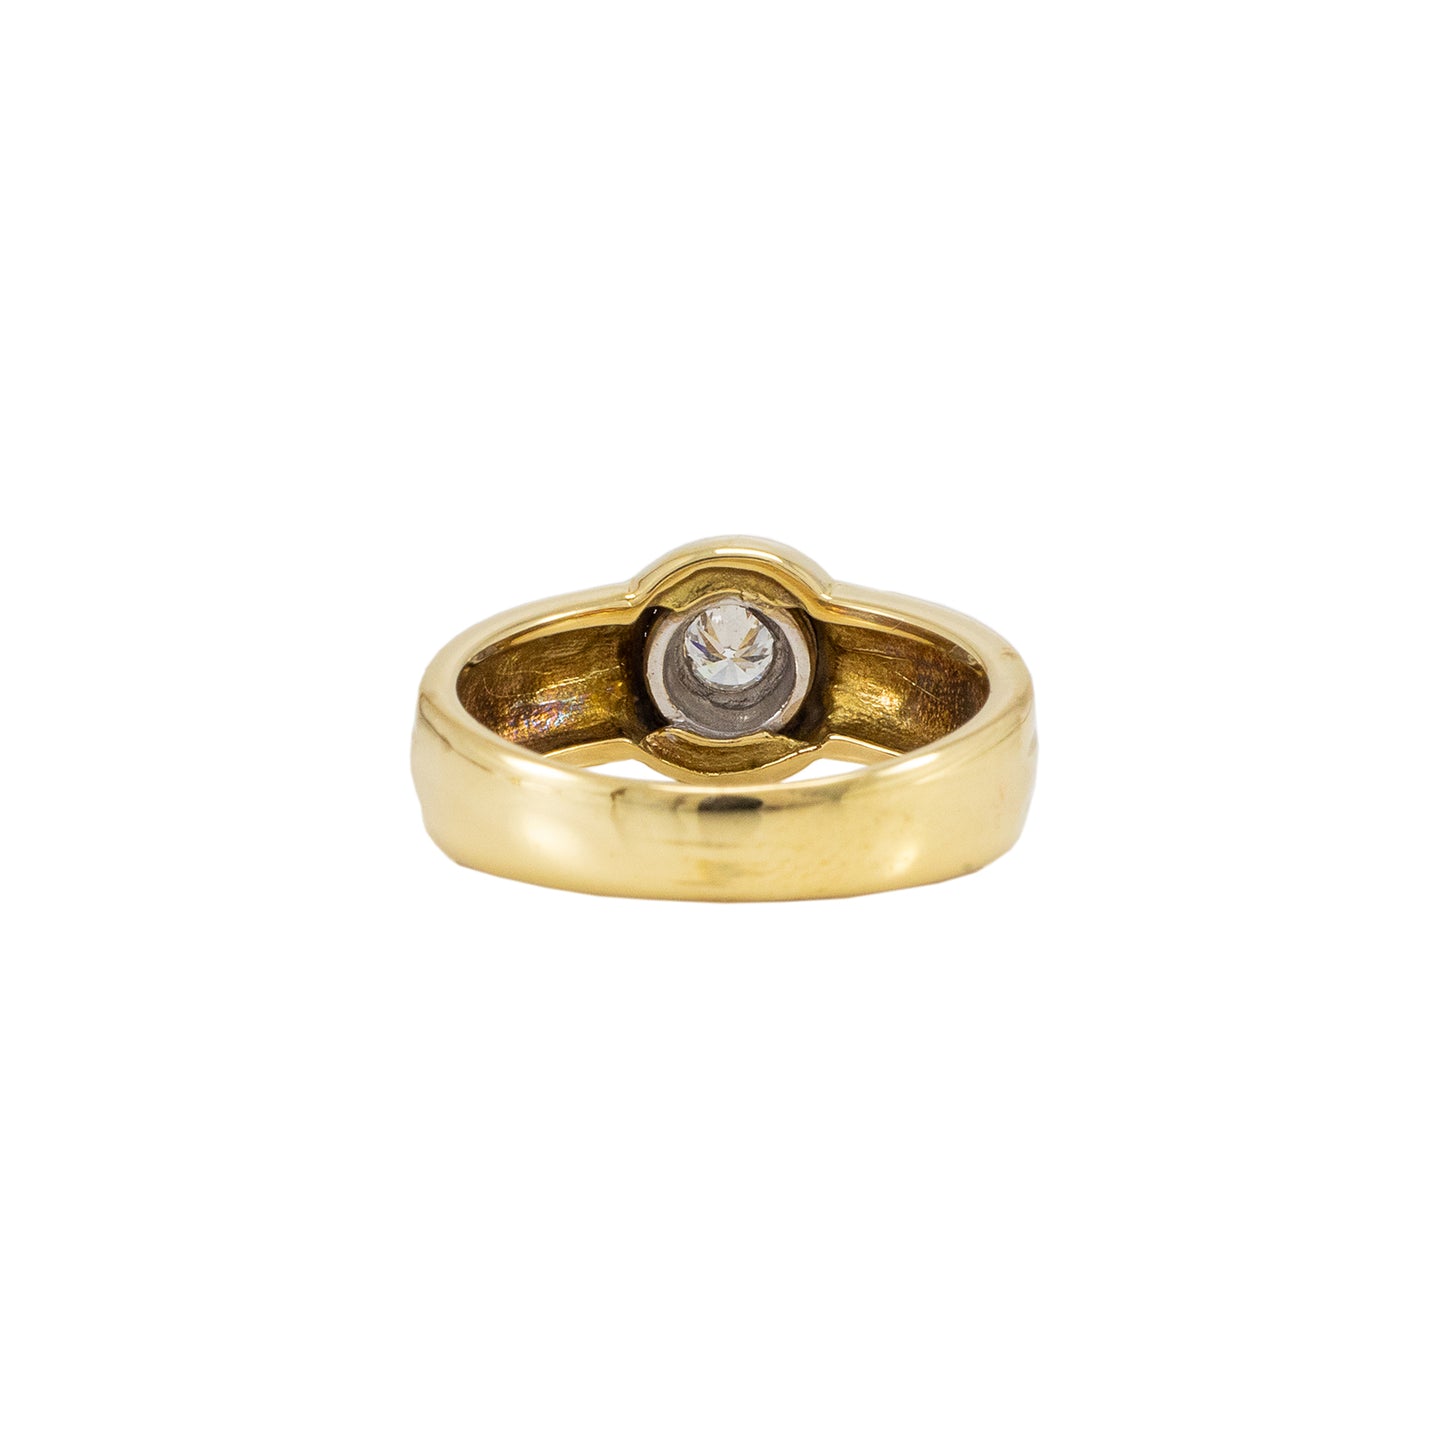 Diamond ring yellow gold 750 18K women's jewelry engagement ring women's ring 